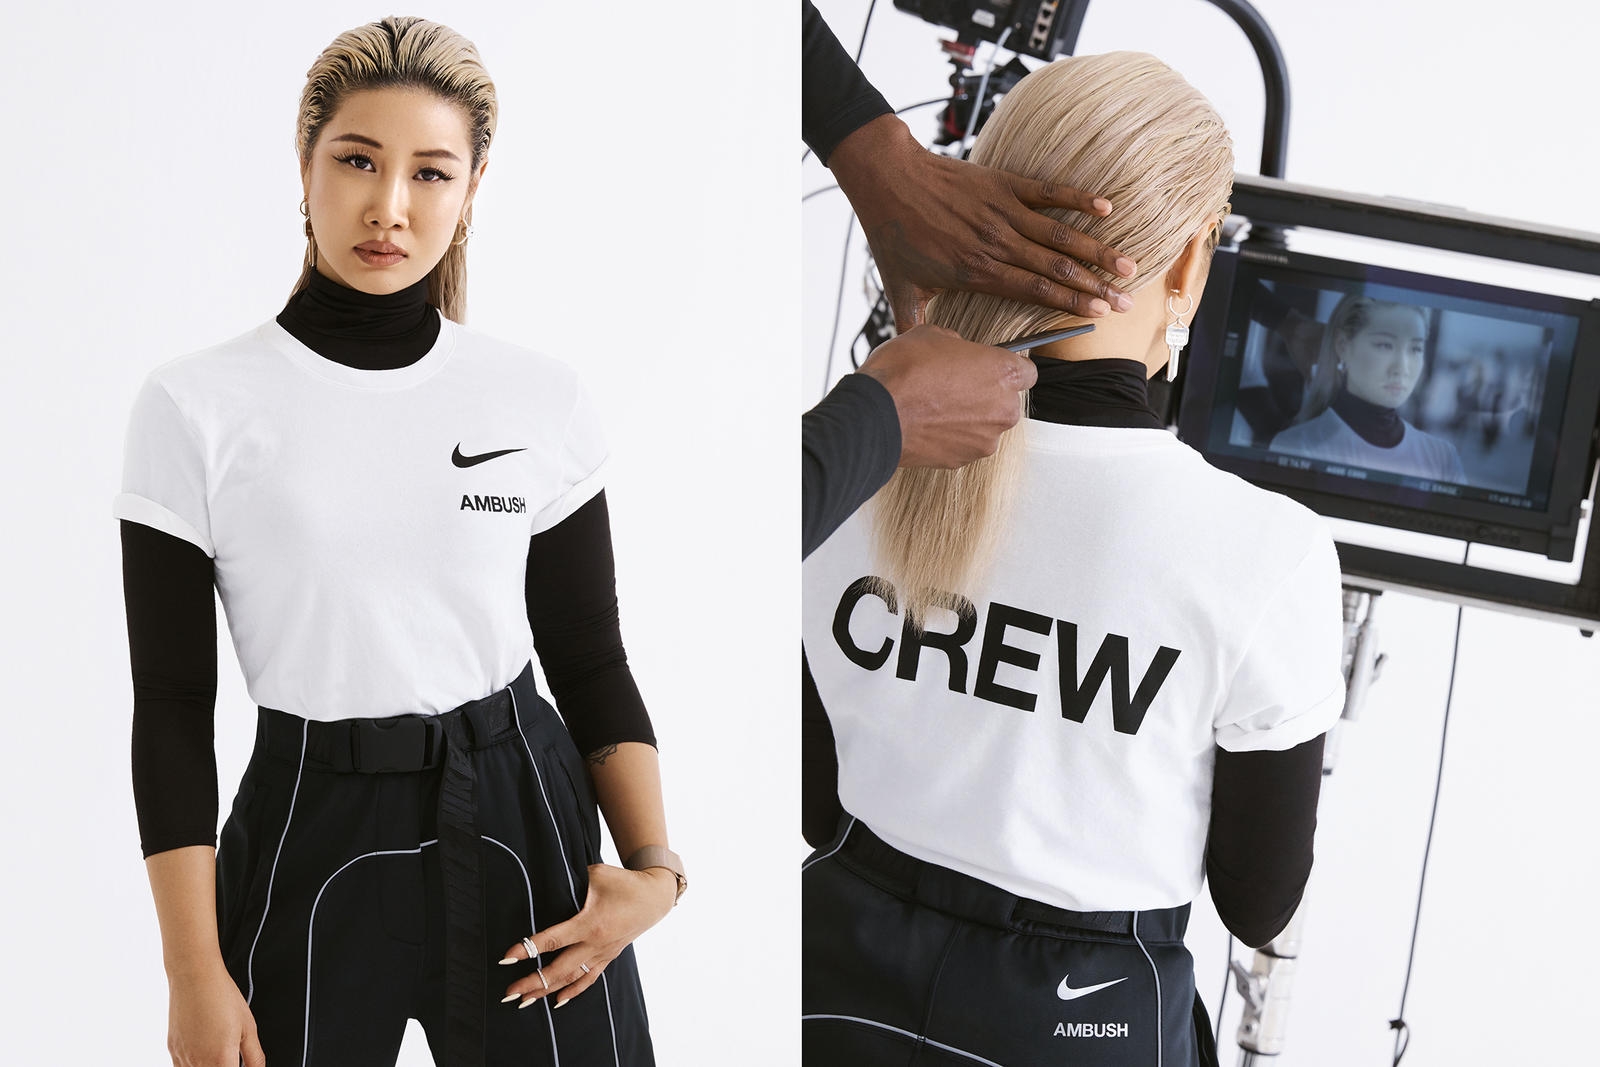 # 時尚不是只能交給金字塔頂端的菁英決定：橫跨街頭和精品圈的女豪傑設計師 Yoon Ahn 17